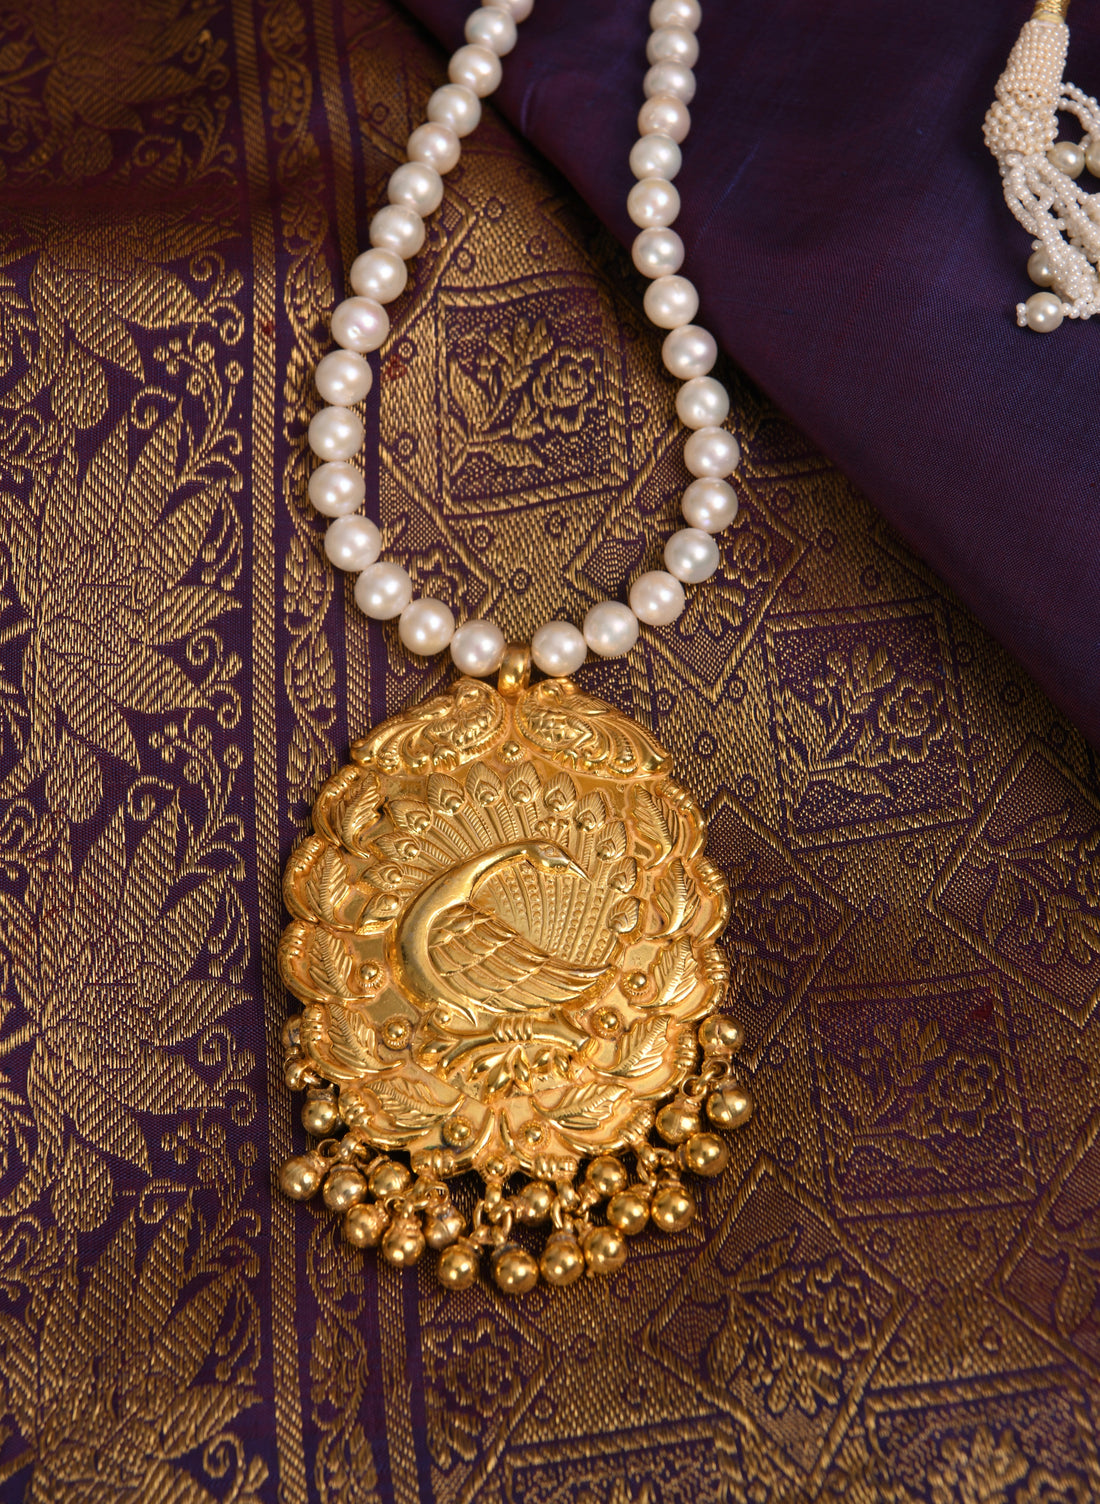 Indian Motifs in Jewellery